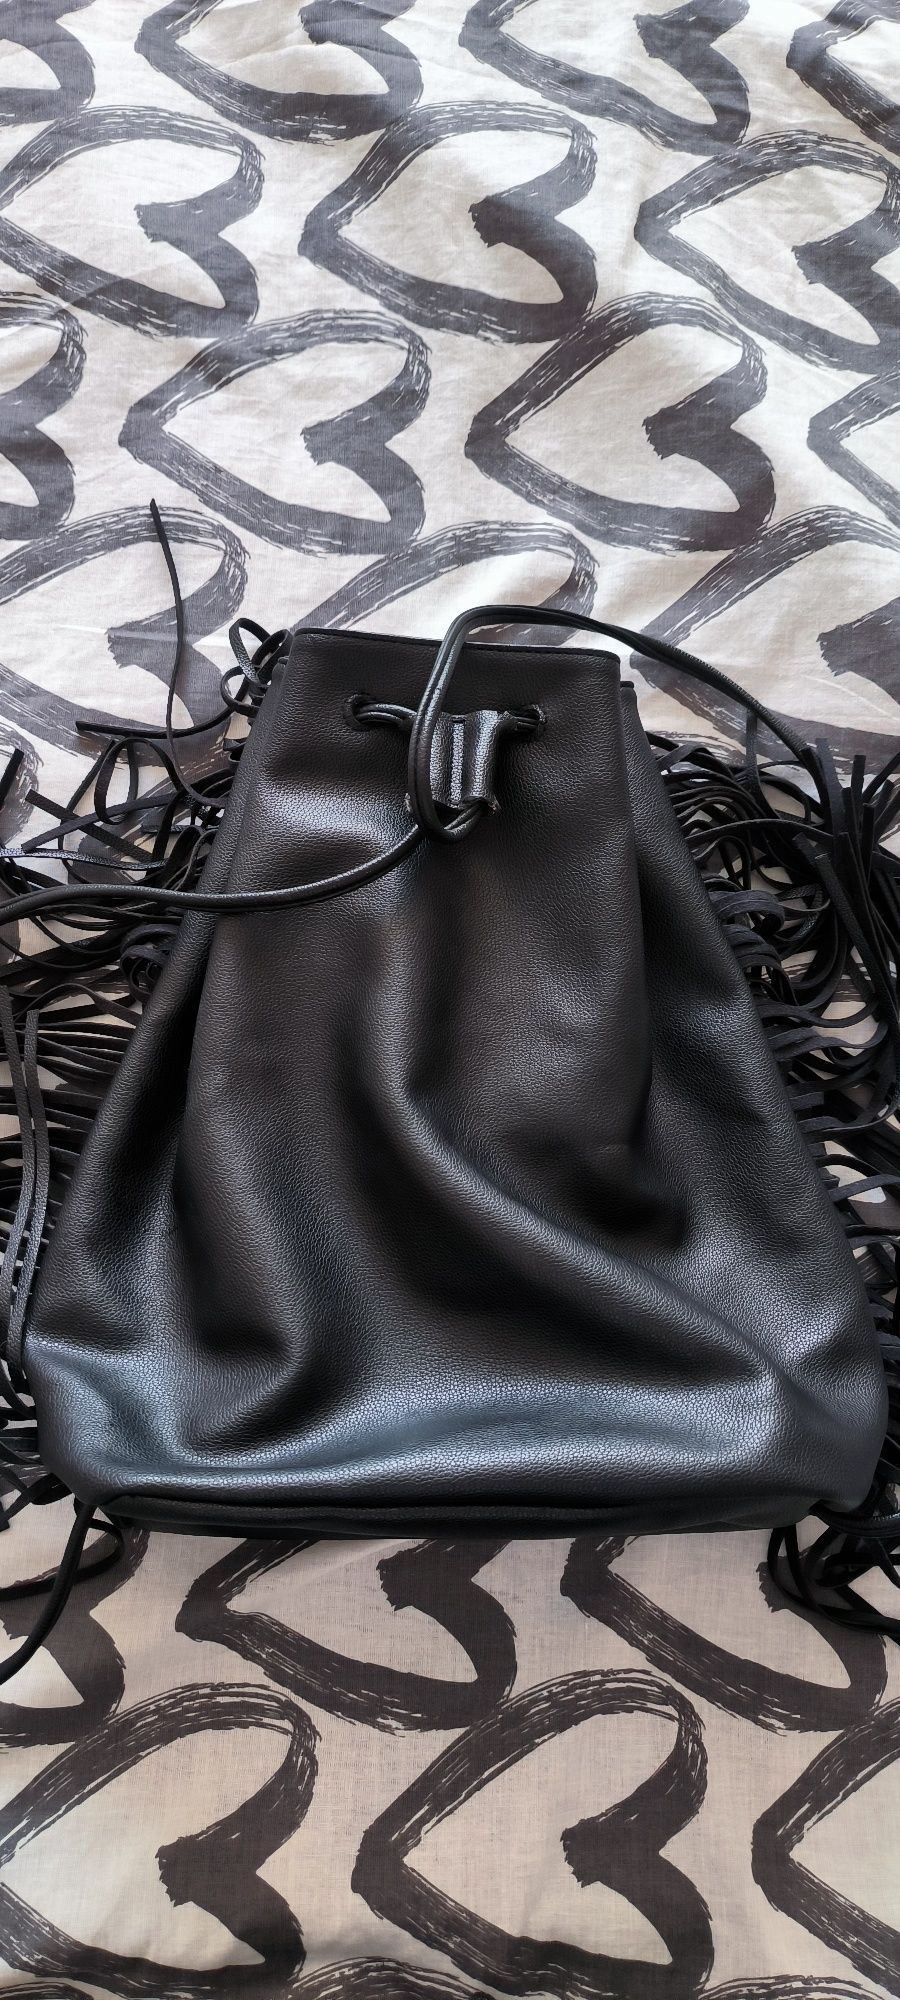 Рюкзак сумка Victoria's secret